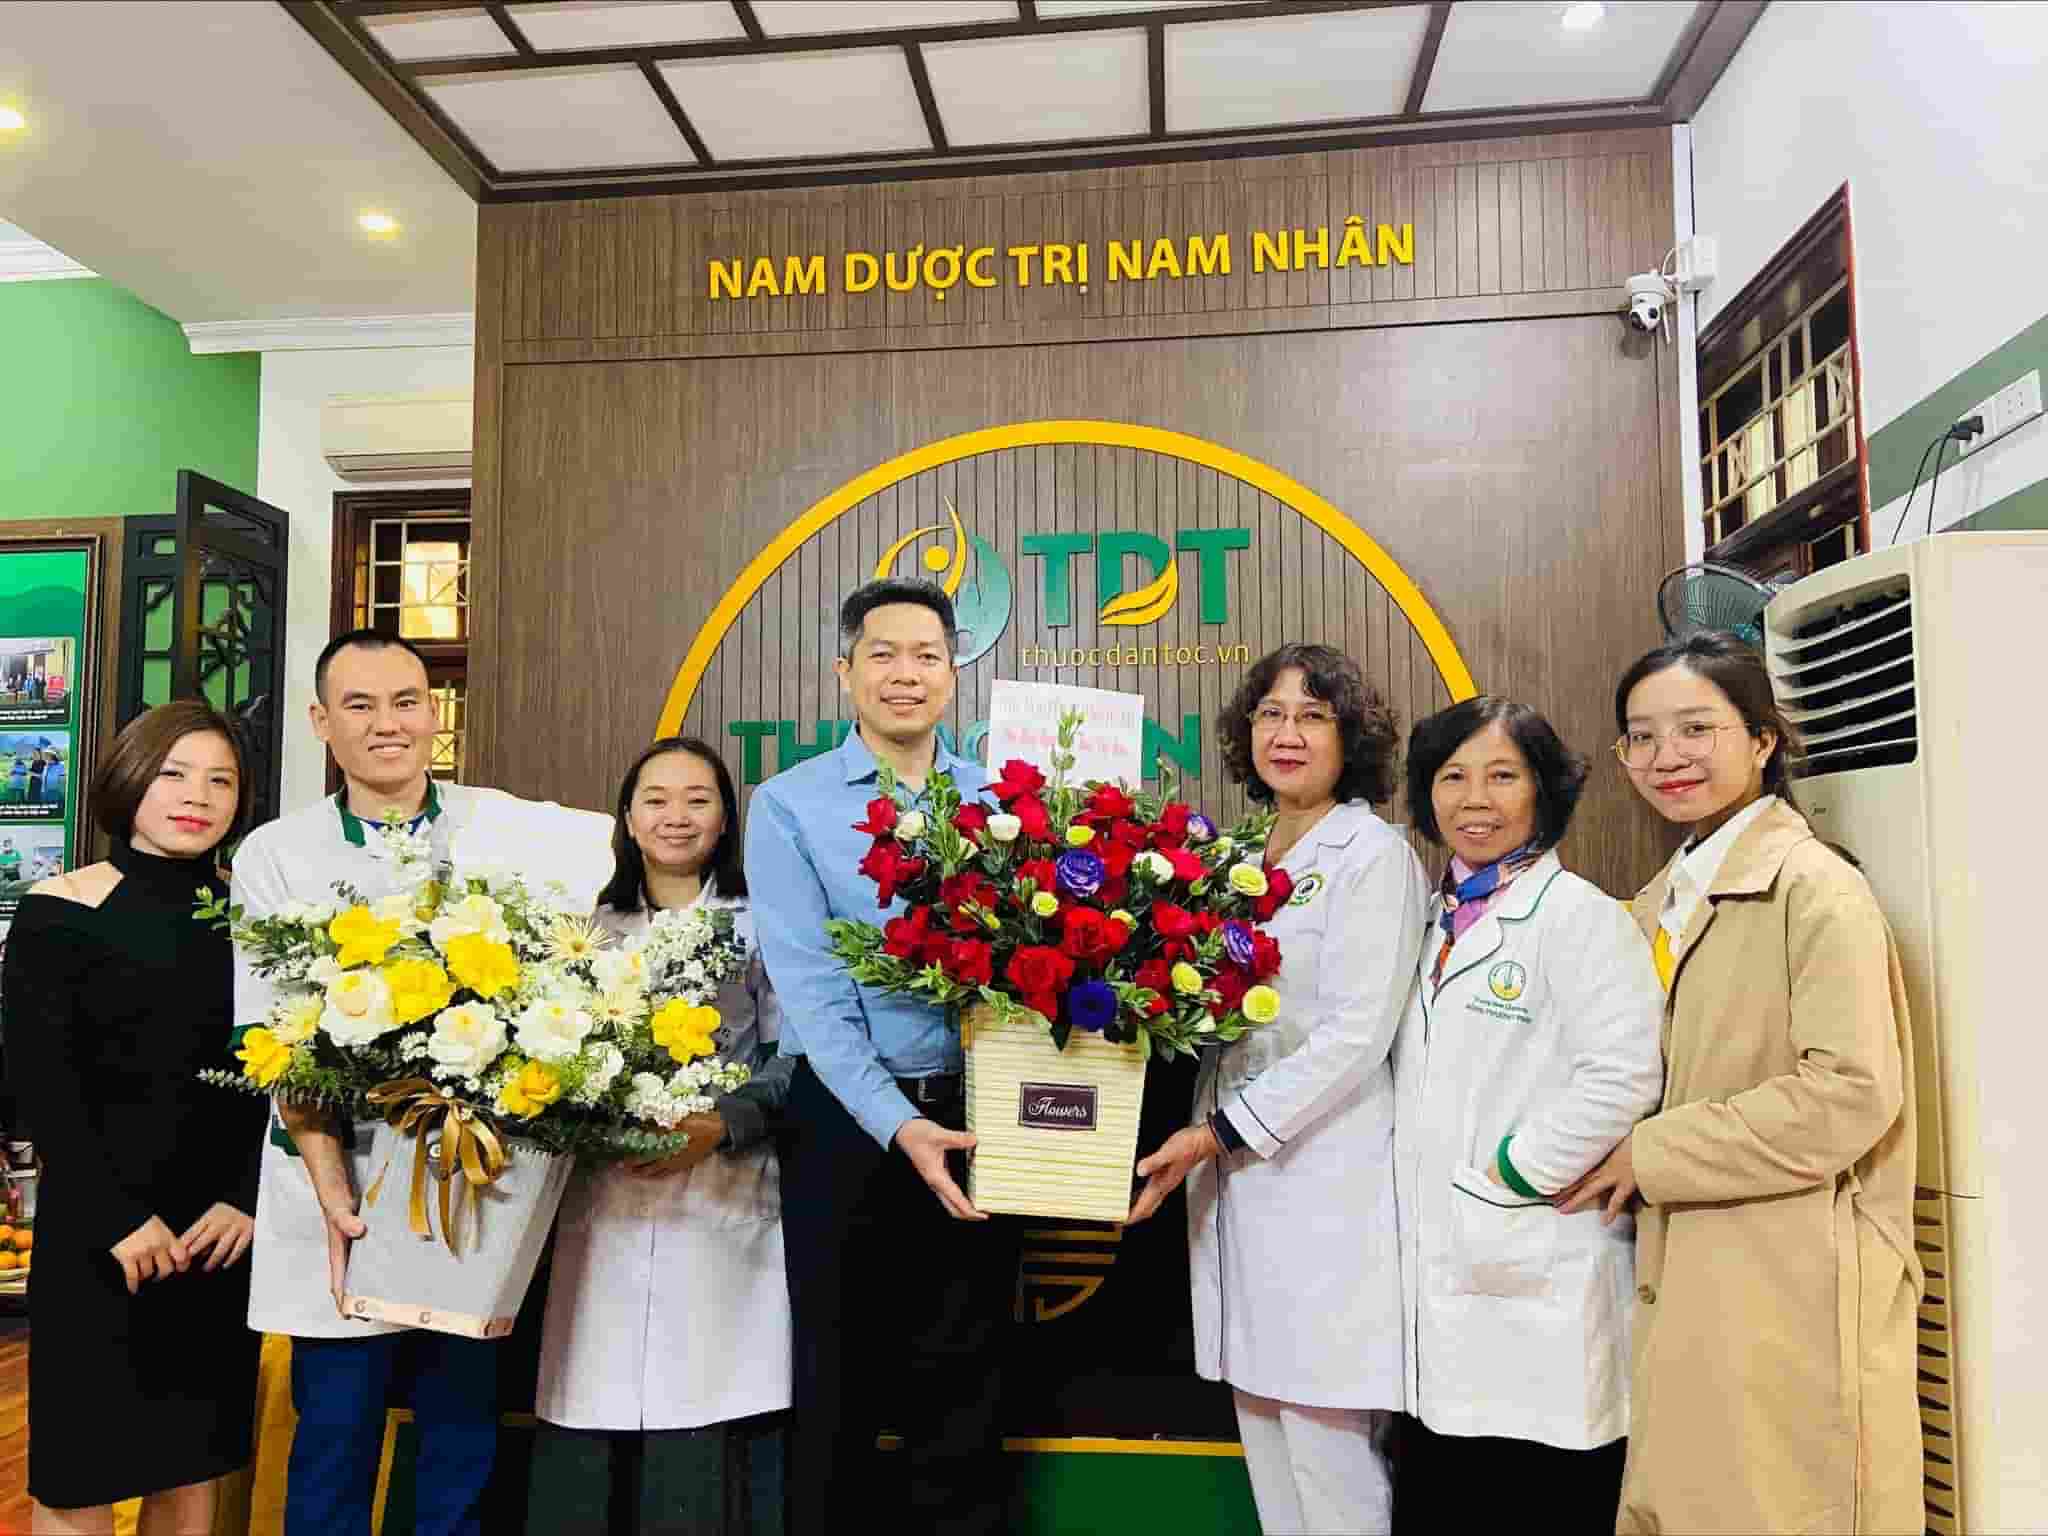 Ban Lãnh Đạo tặng hoa và chúc mừng đội ngũ bác sĩ ở cơ sở Nguyễn Thị Định